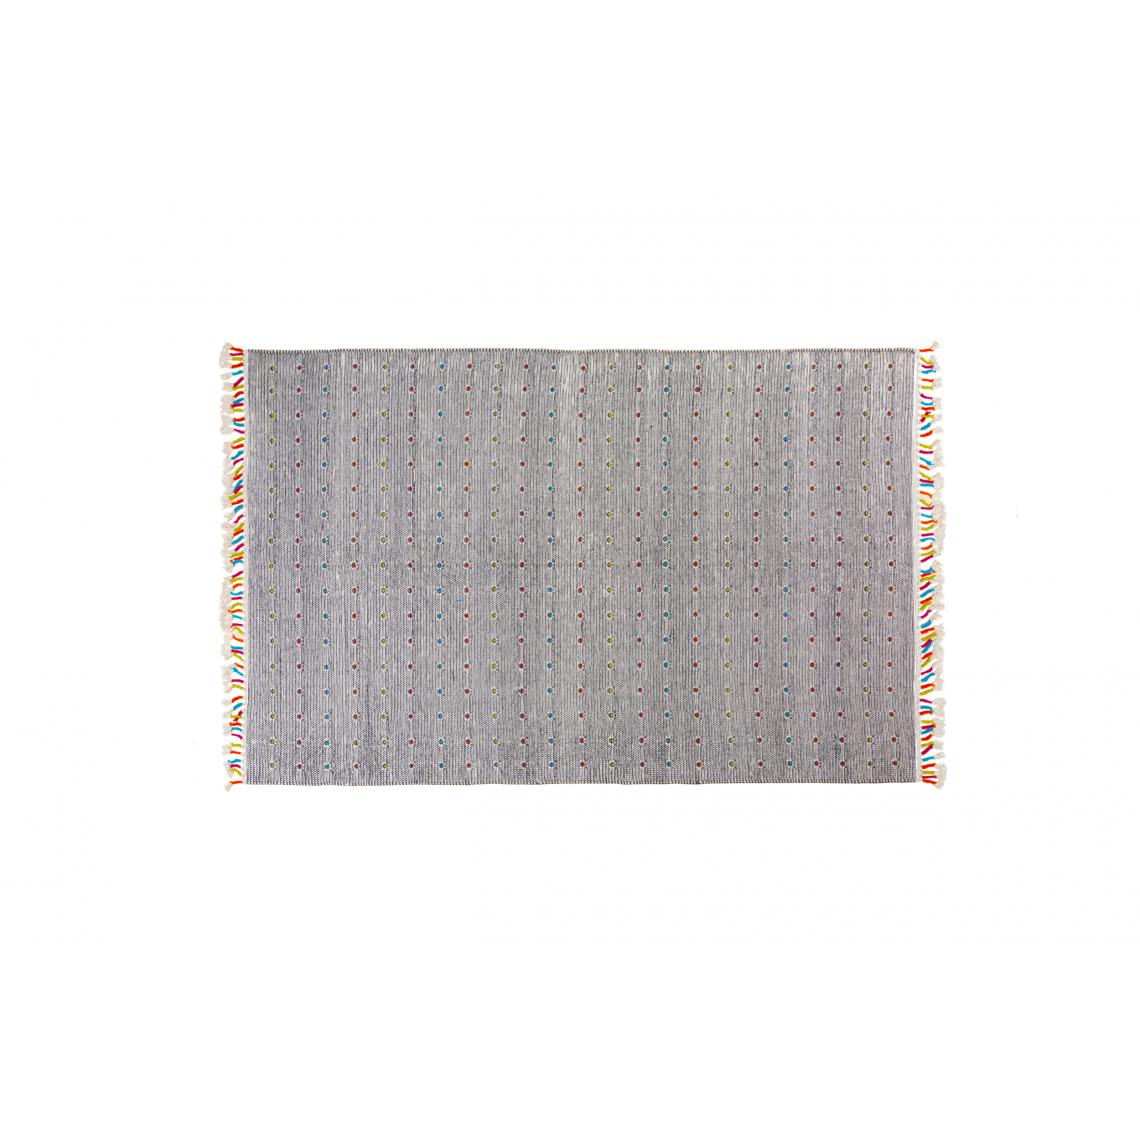 Alter - Tapis Texas moderne, style kilim, 100% coton, gris, 110x60cm - Tapis